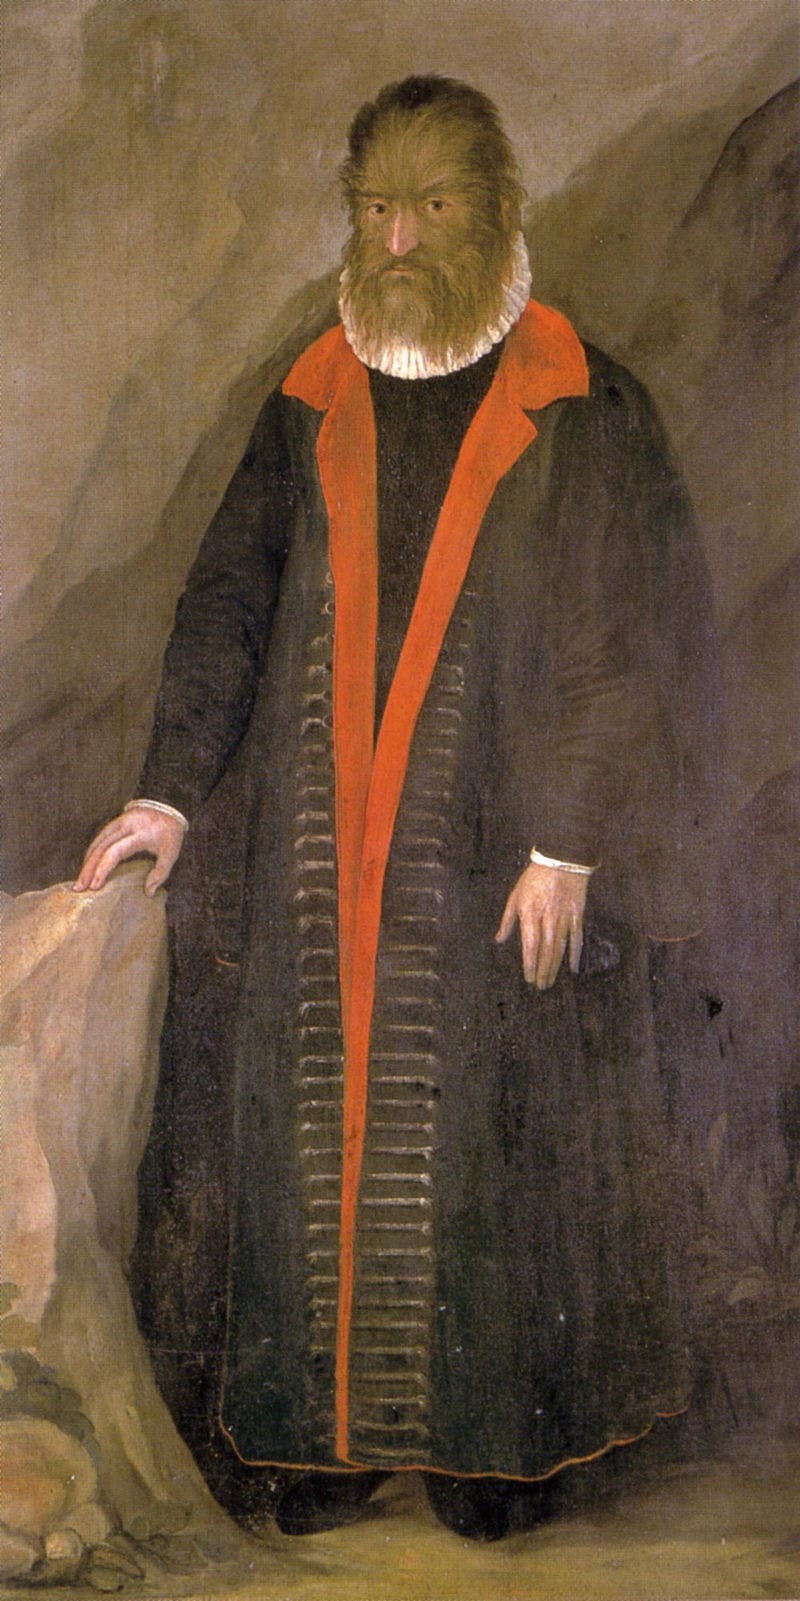 Portrait de Pedro Gonzales, dit Petrus Gonsalvus.